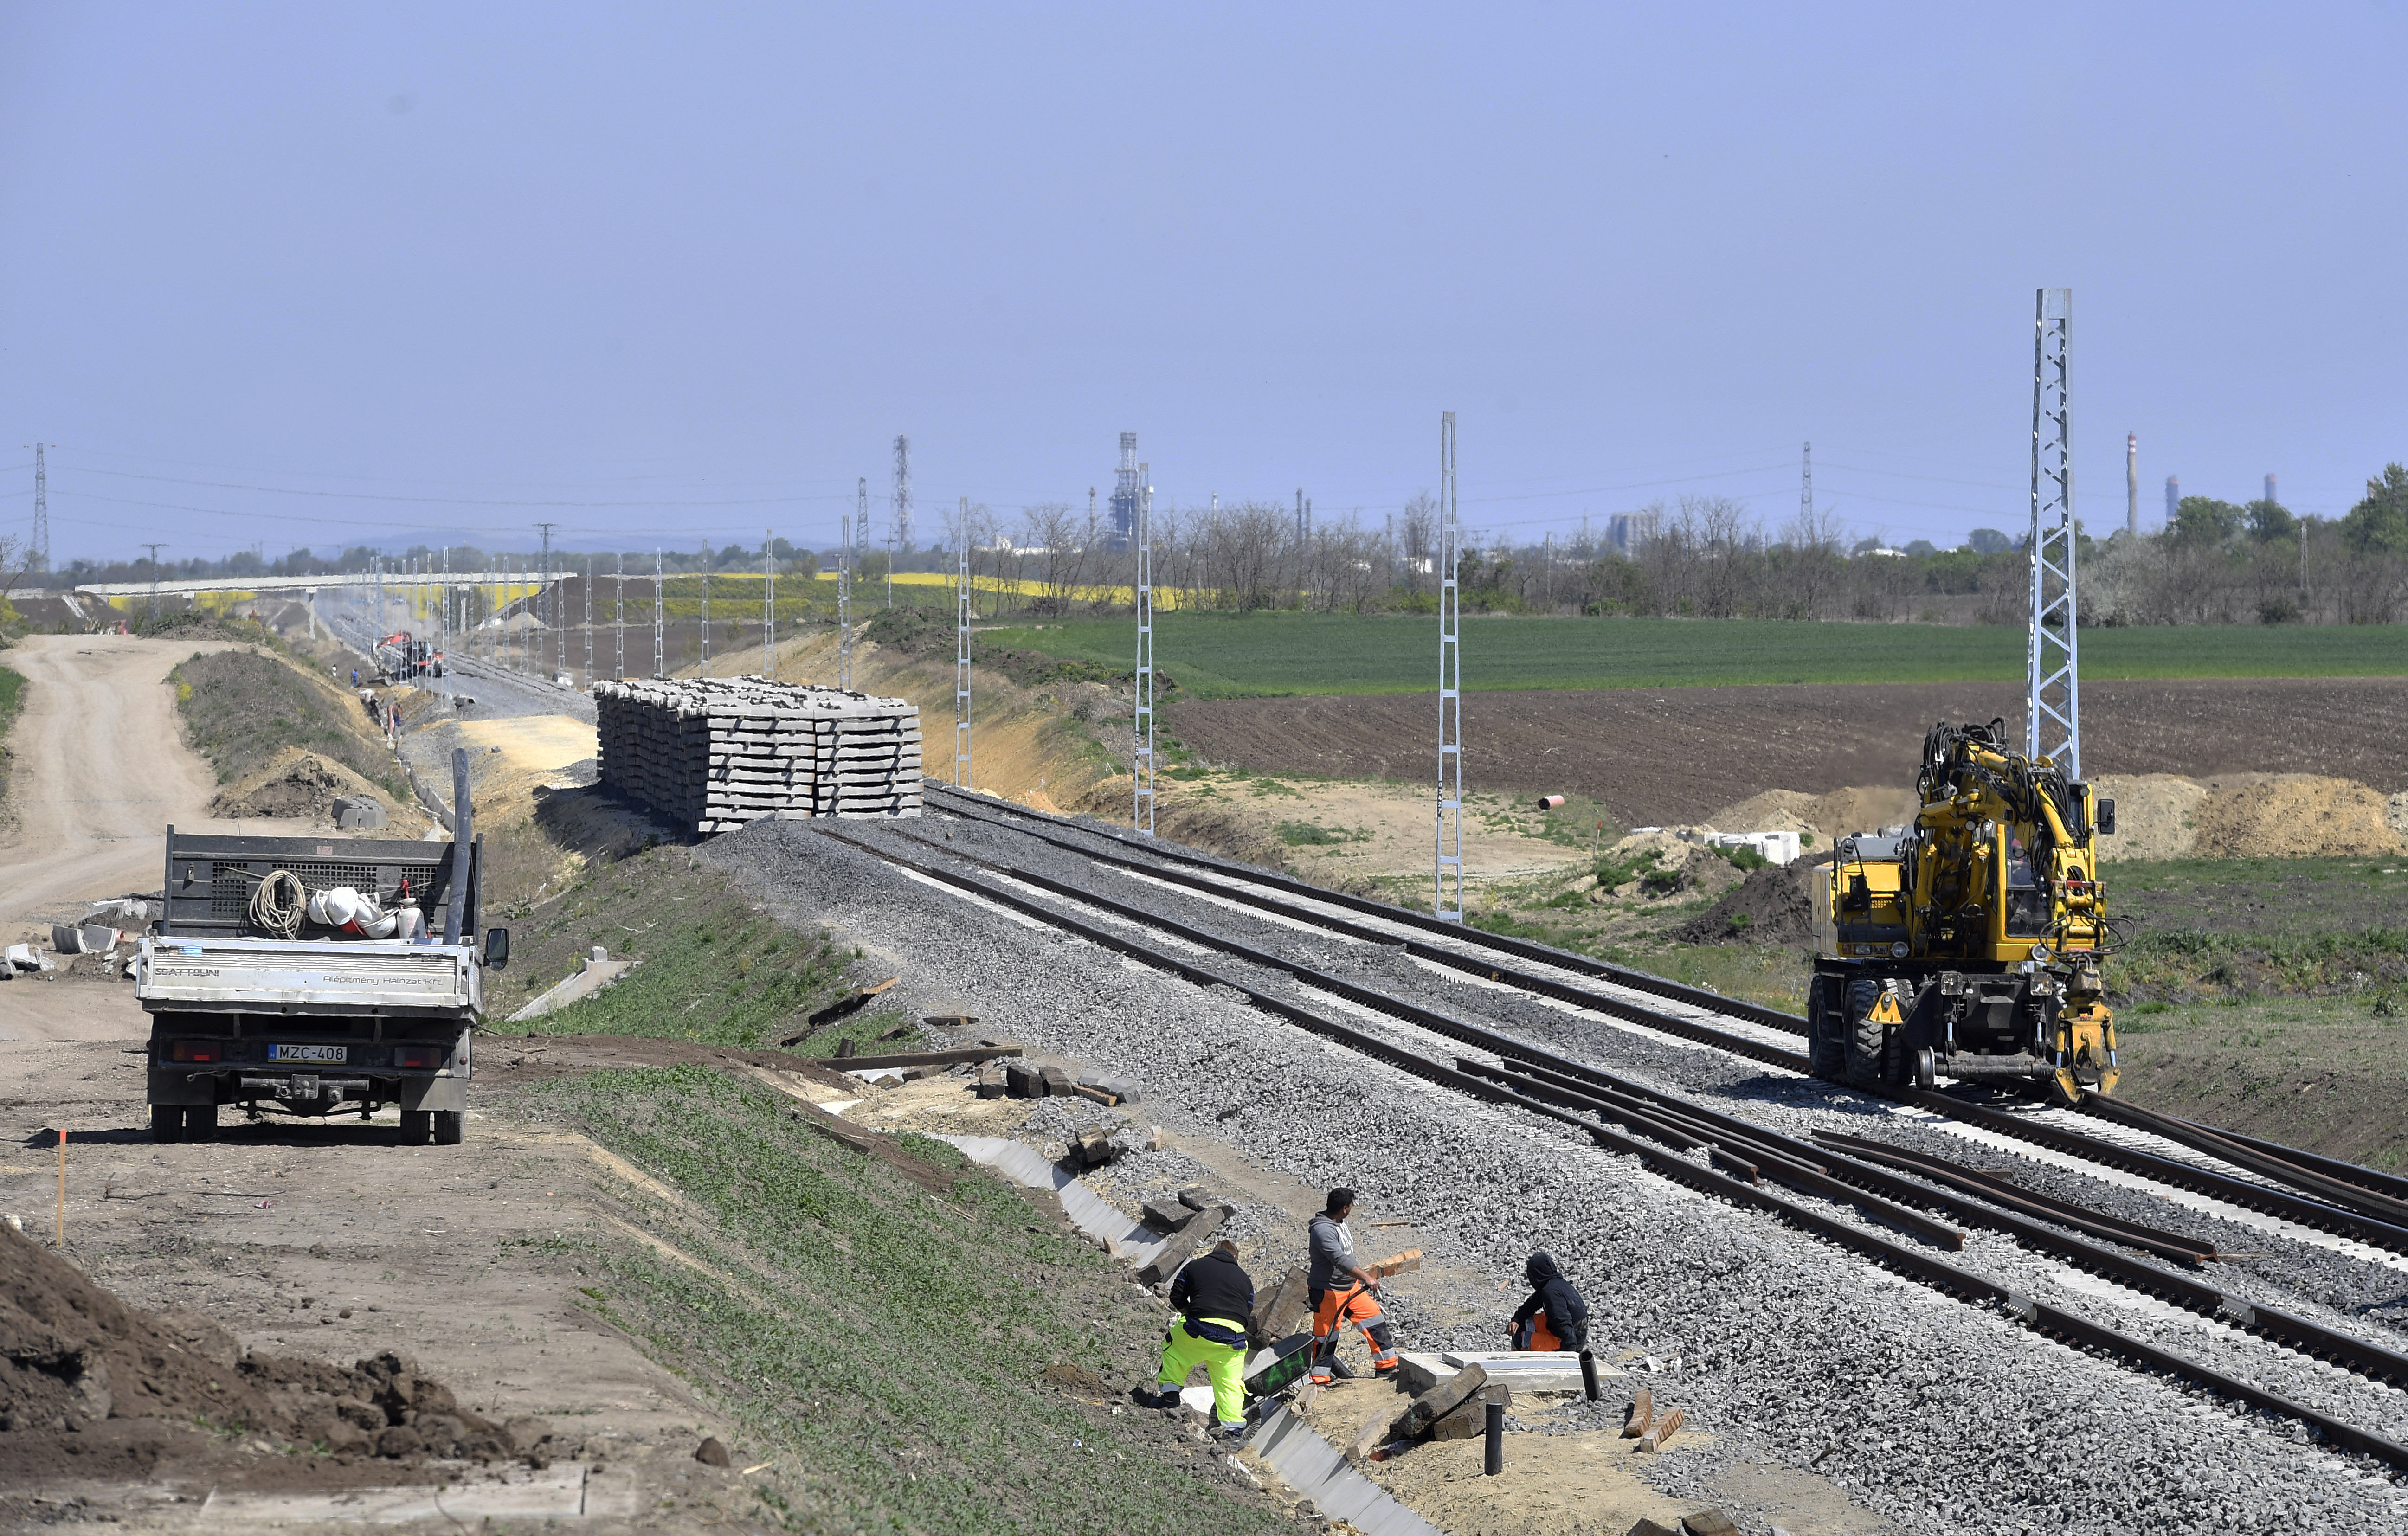 Kínai után orosz hitelből is épülhet magyar vasút